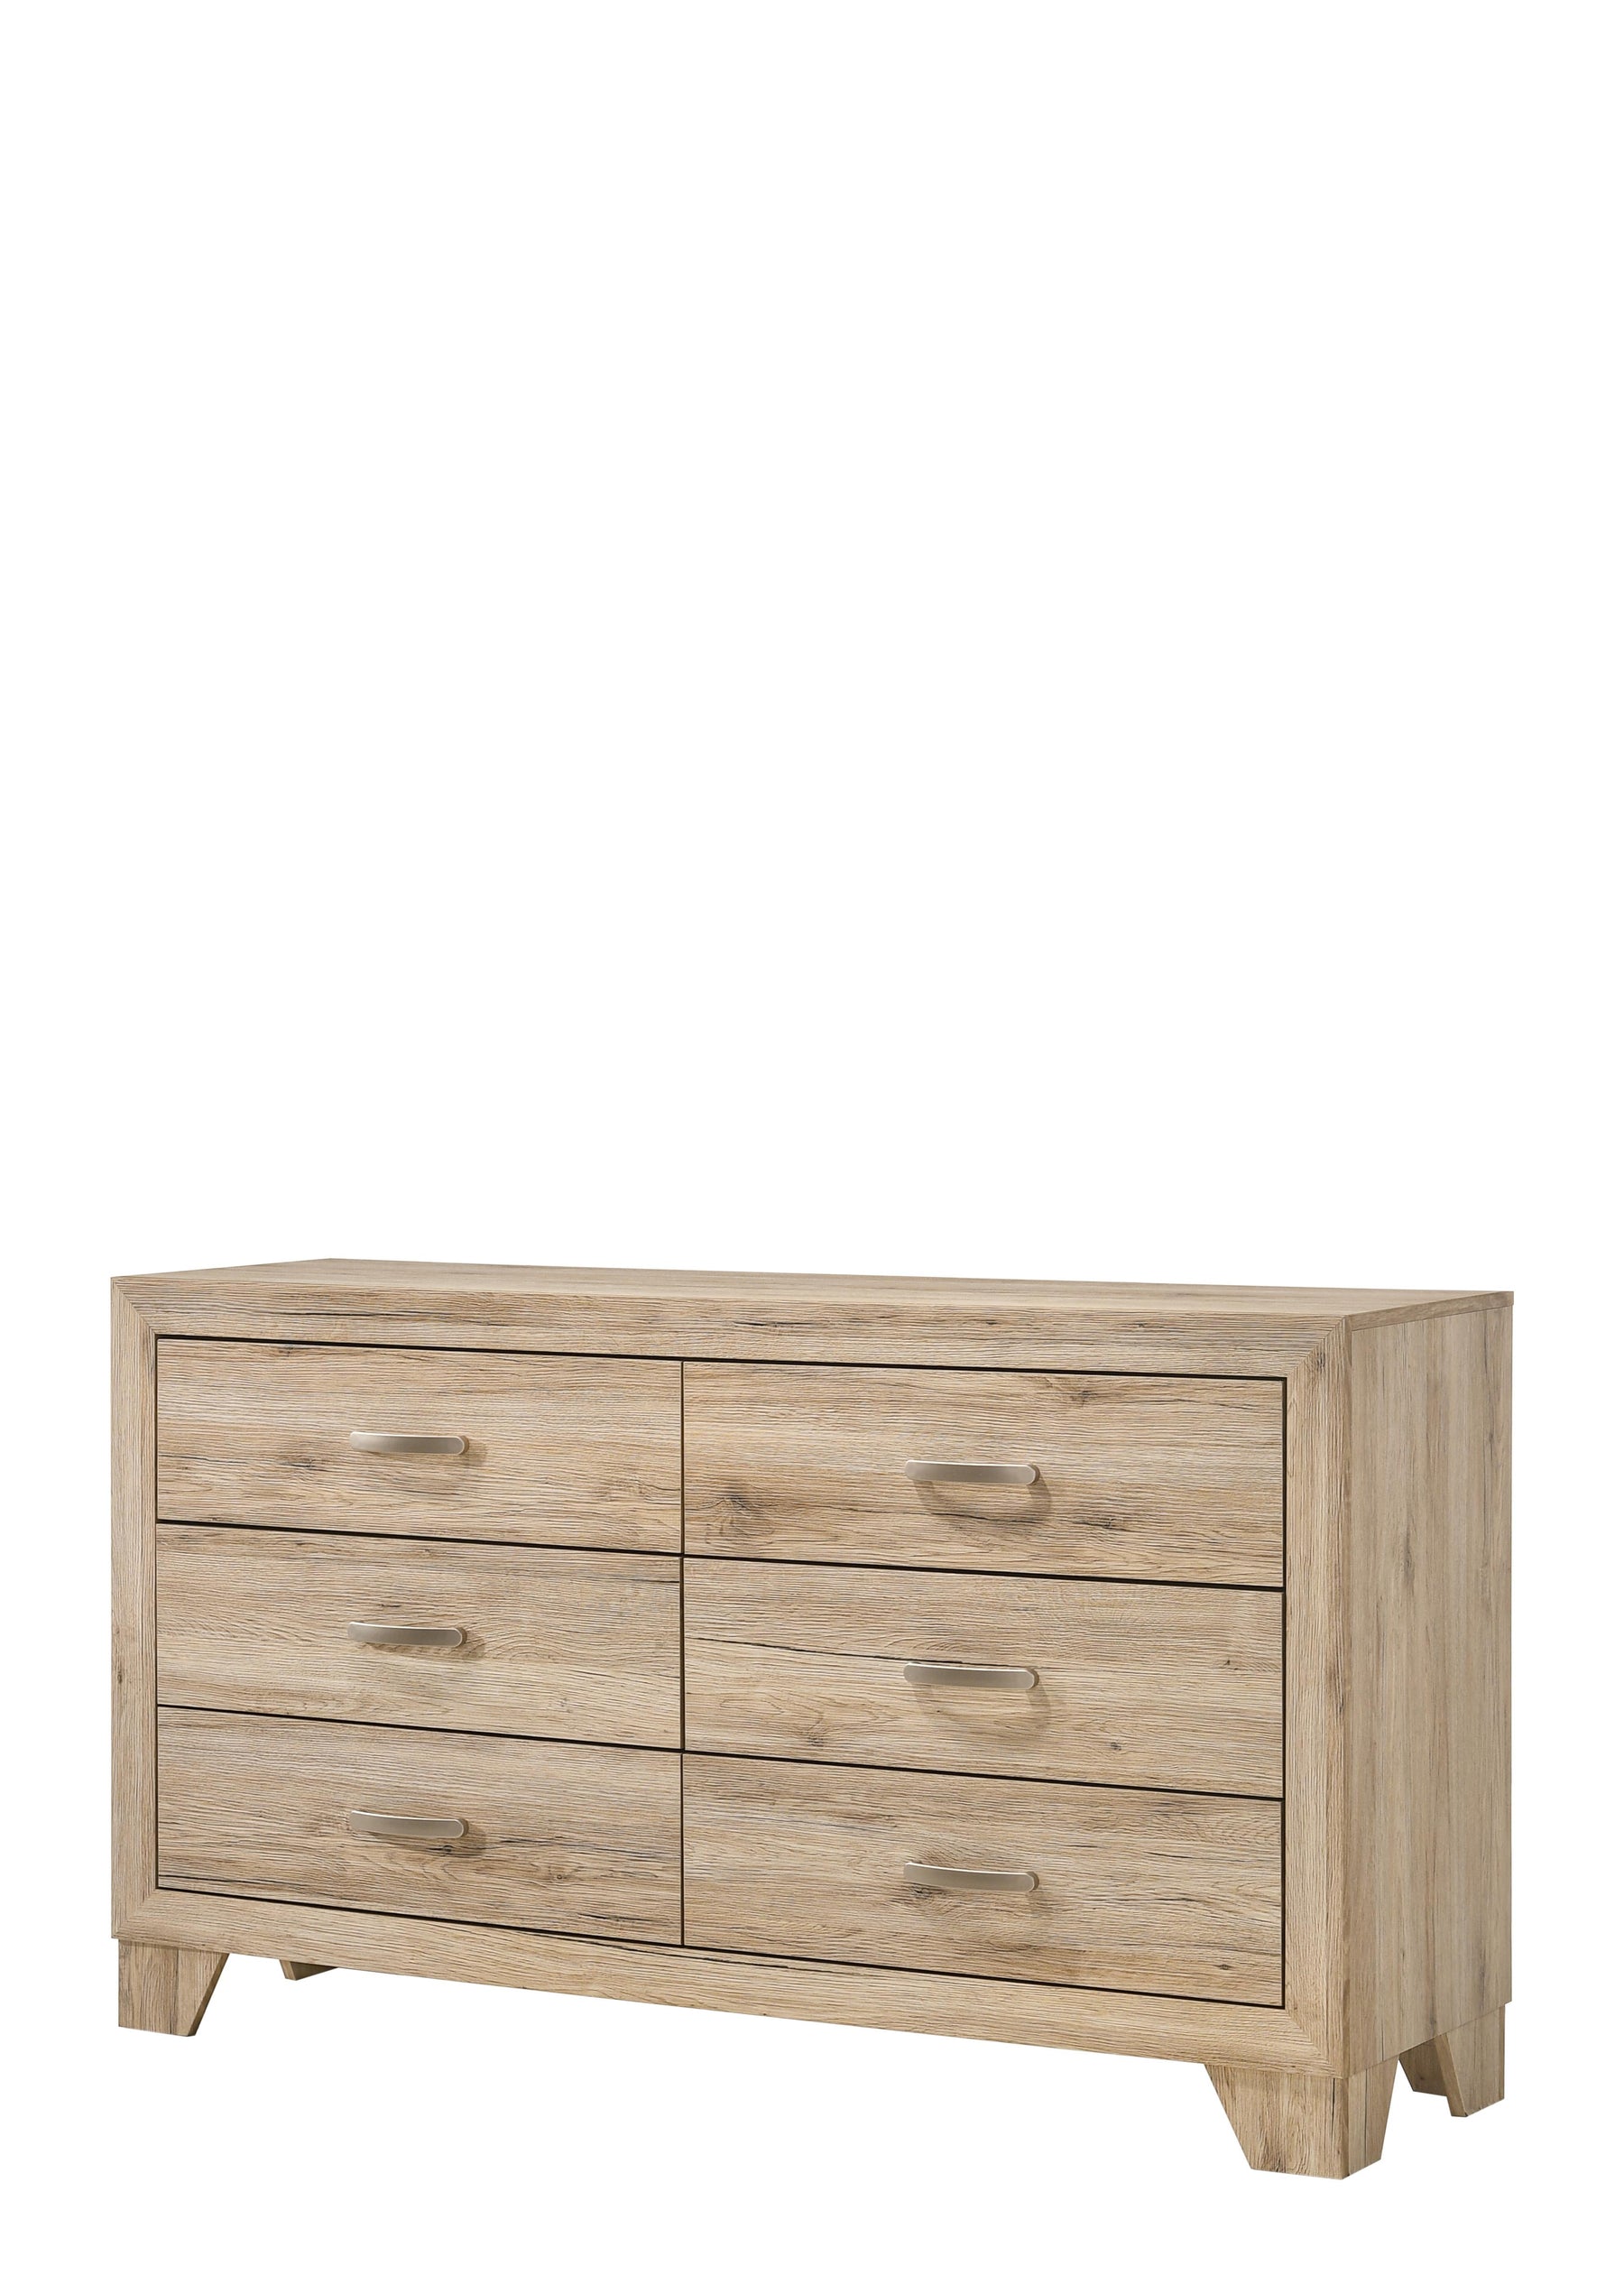 Miquell Natural Dresser  Half Price Furniture